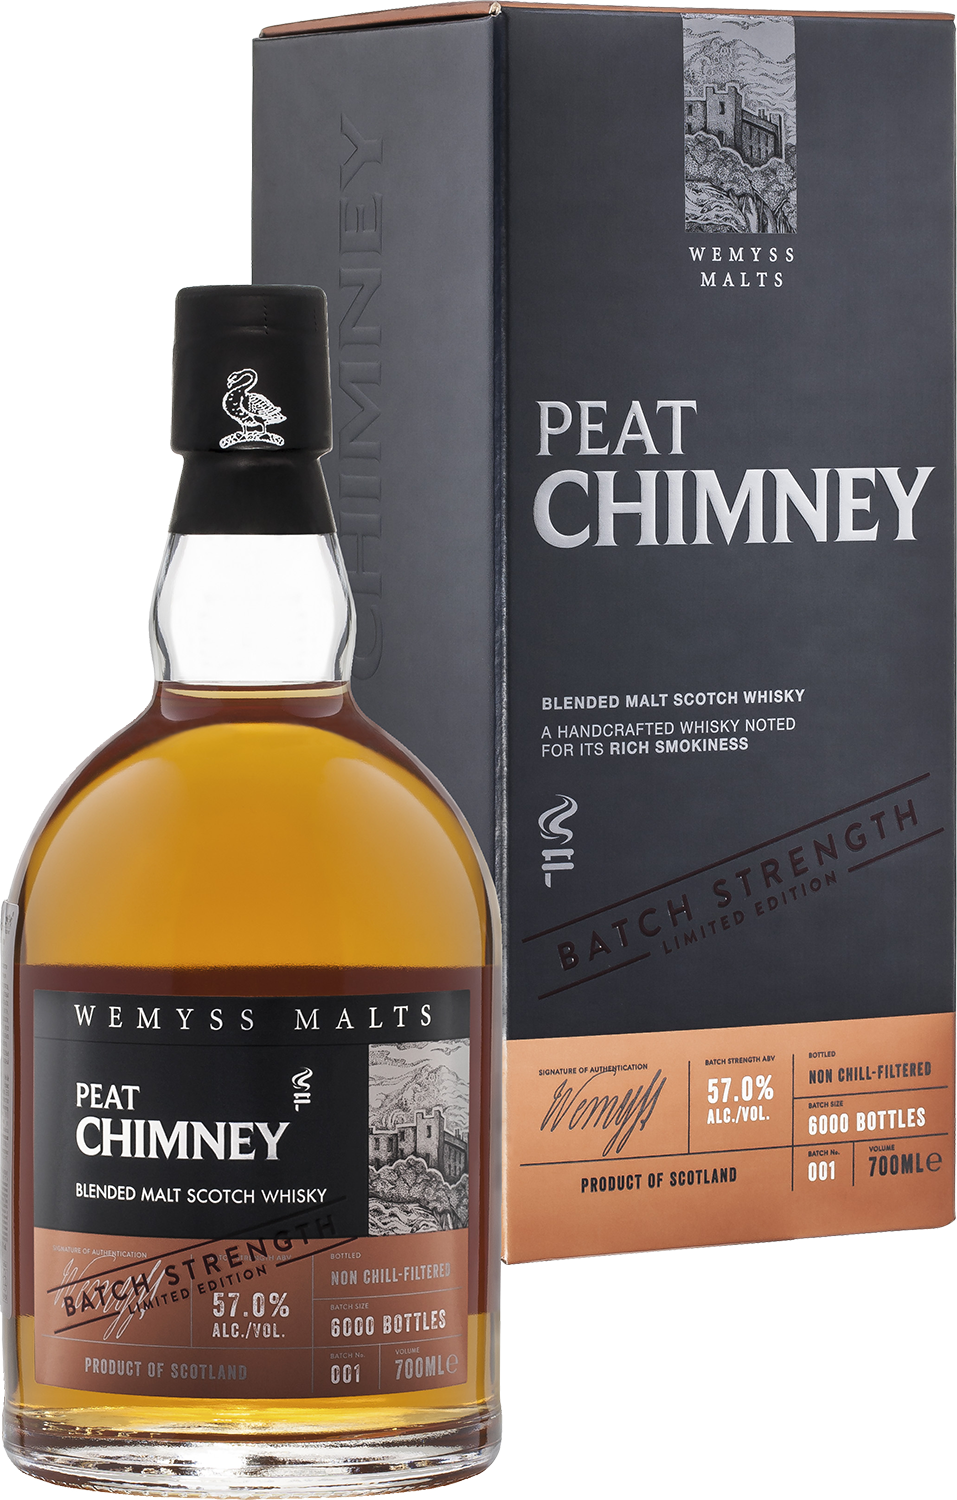 Peat Chimney Batch Strength Wemyss Malts blended malt scotch whisky